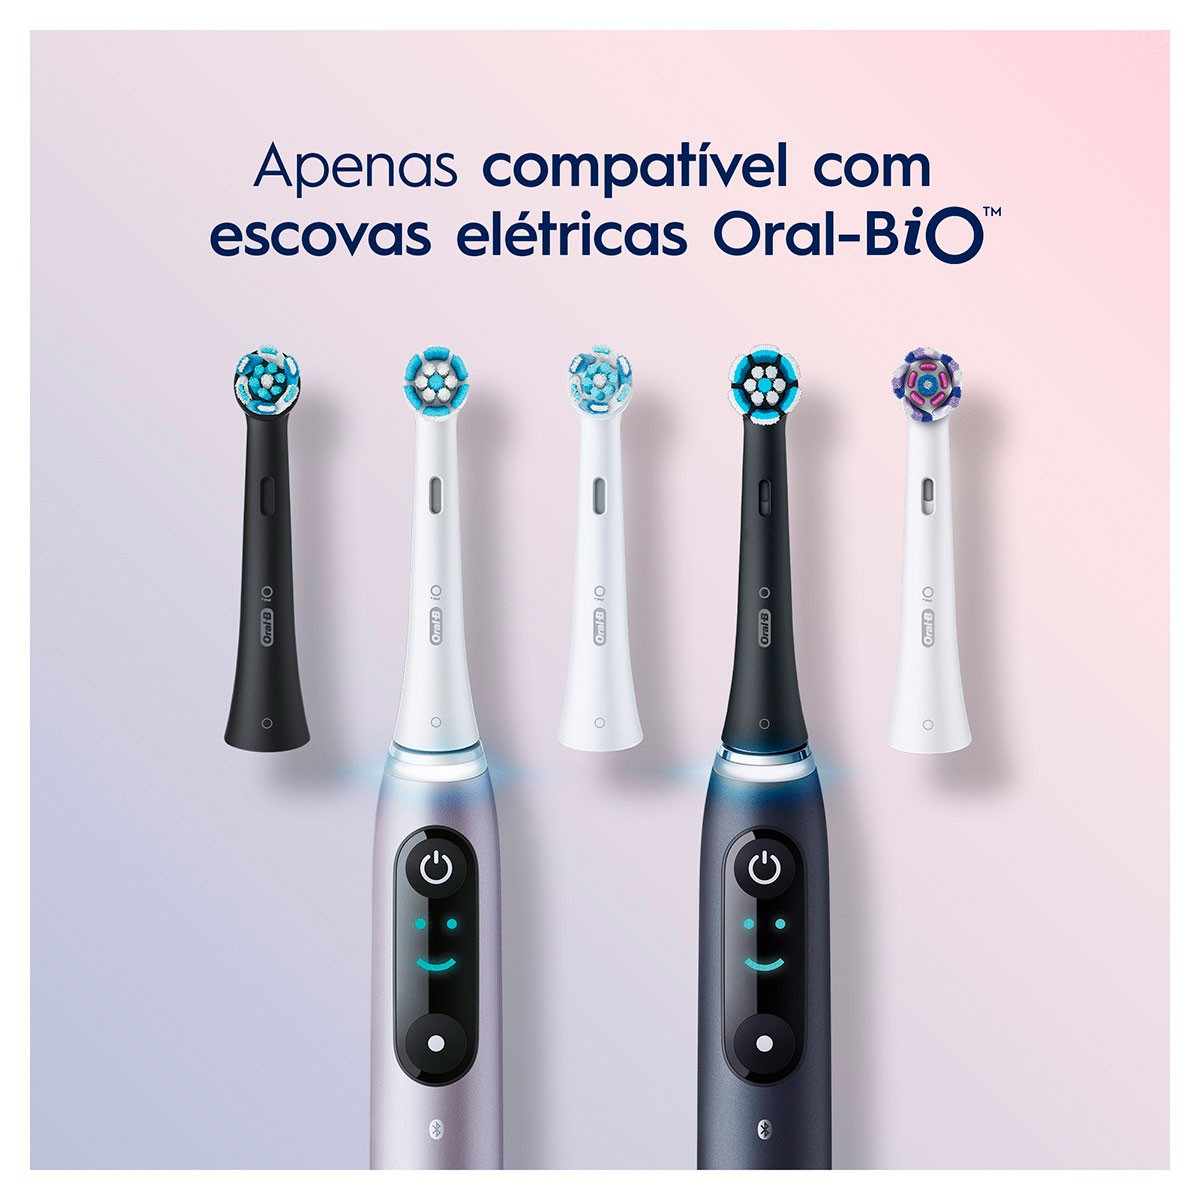 Recambio Oral-B iO Ultimate Clean Blanco - 6 cabezales